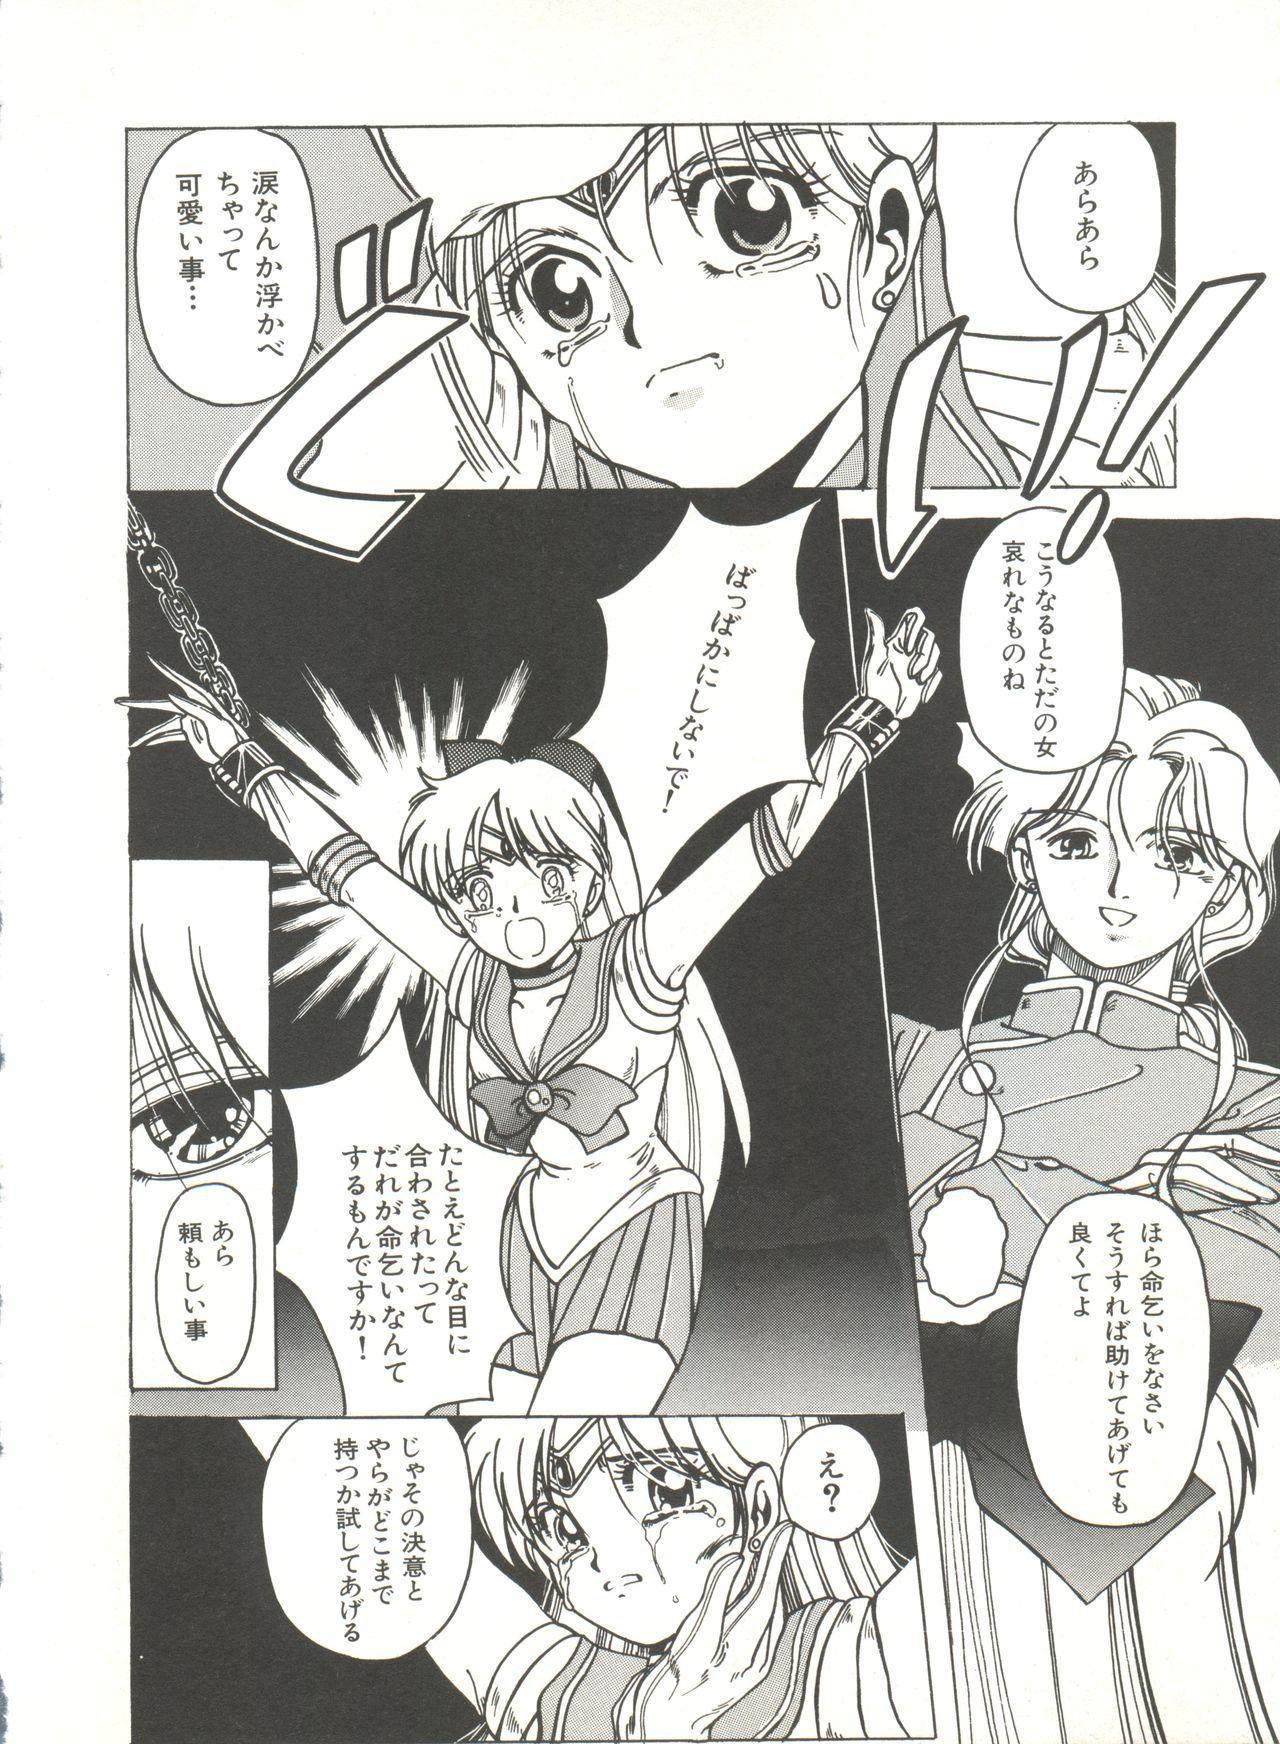 Sexy Whores Bishoujo Doujinshi Anthology 3 - Moon Paradise 2 Tsuki no Rakuen - Sailor moon Breasts - Page 9